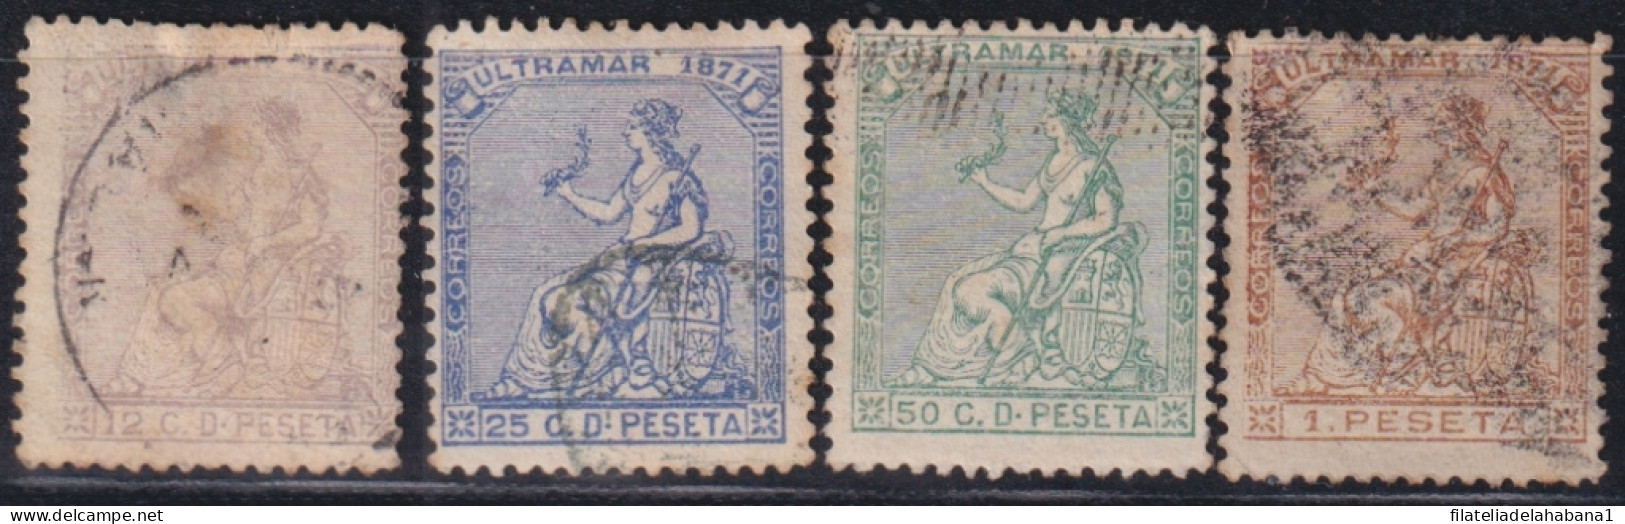 1871-136 CUBA ANTILLES SPAIN 1871 COMPLETE SET USED.  - Voorfilatelie